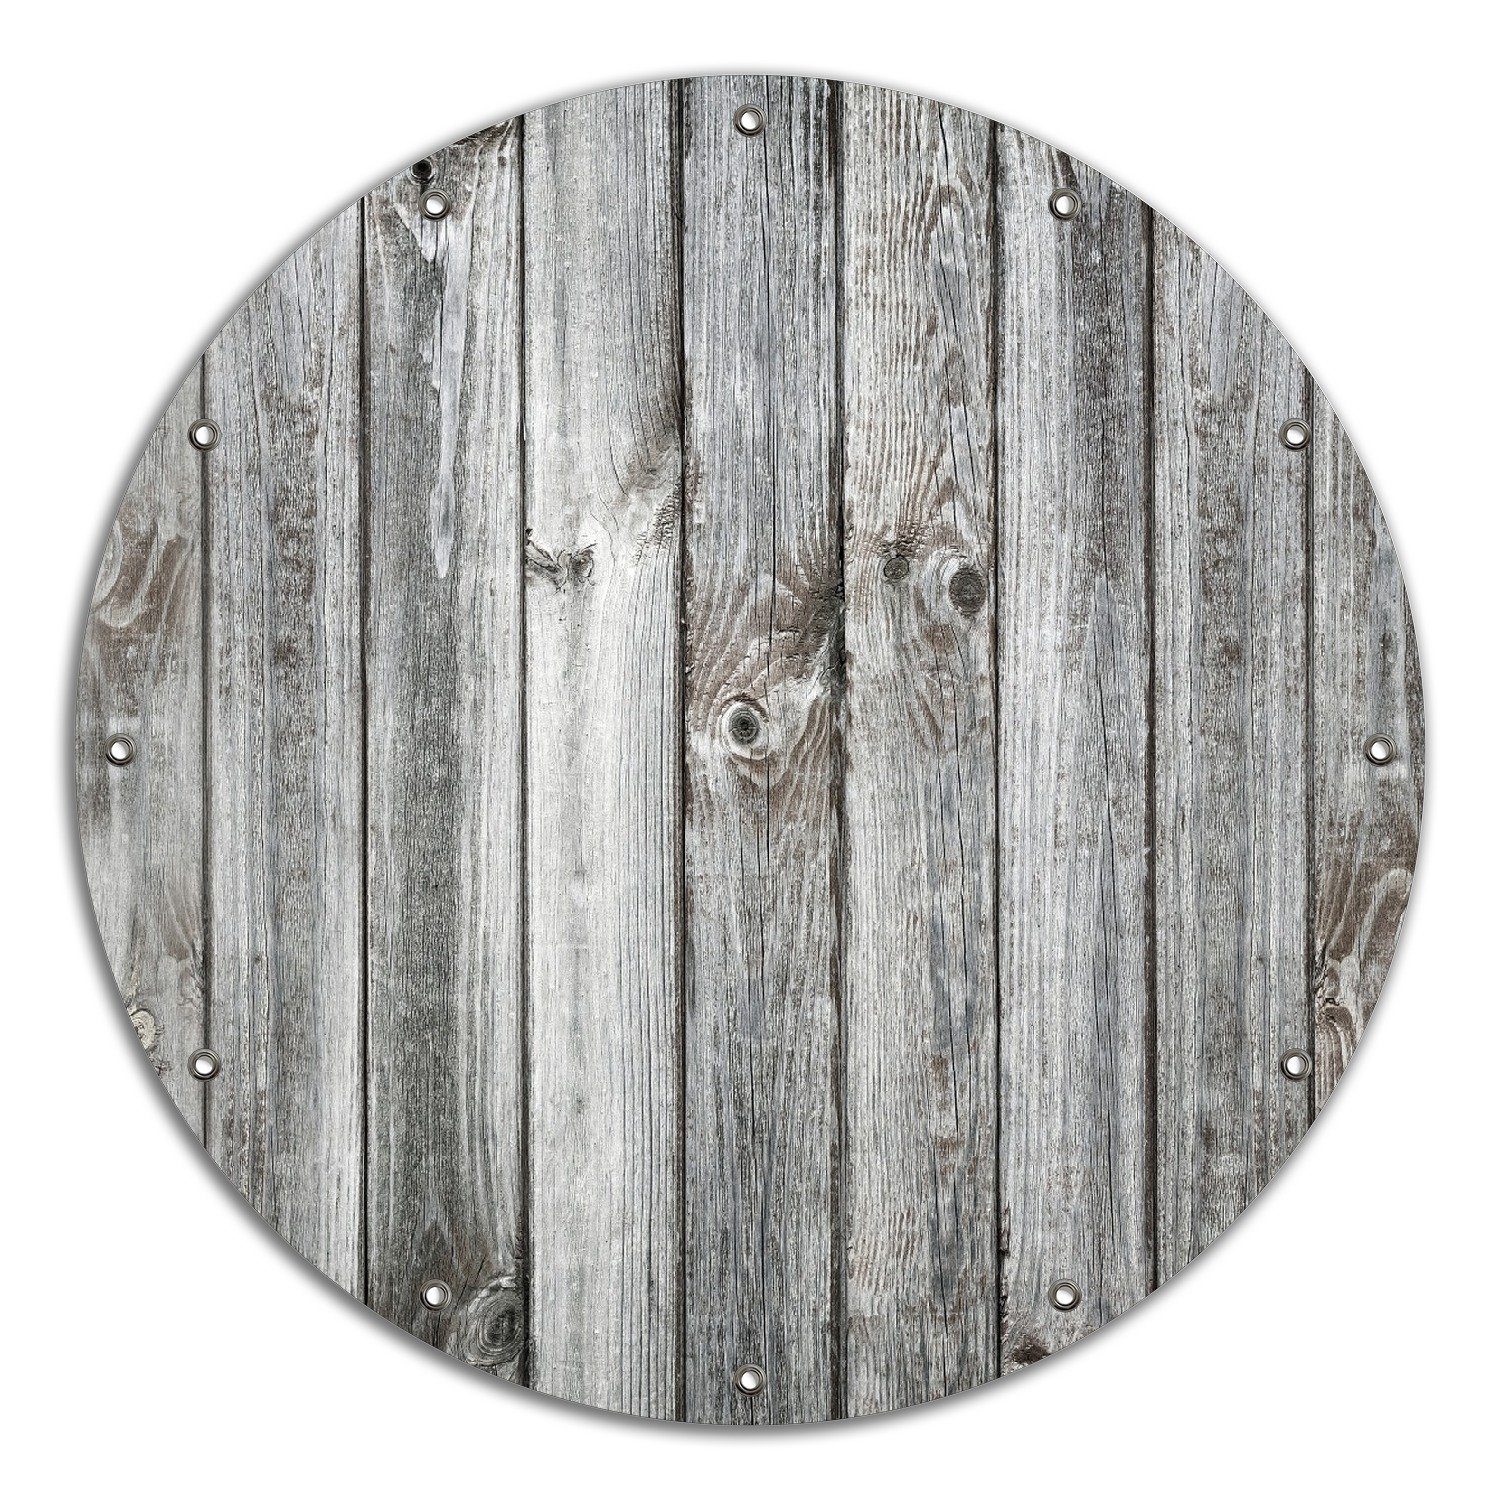 Wallario Sichtschutzzaunmatten Holz-Optik Textur hellgraues Holz Paneele Dielen mit Asteinschlüssen, rund